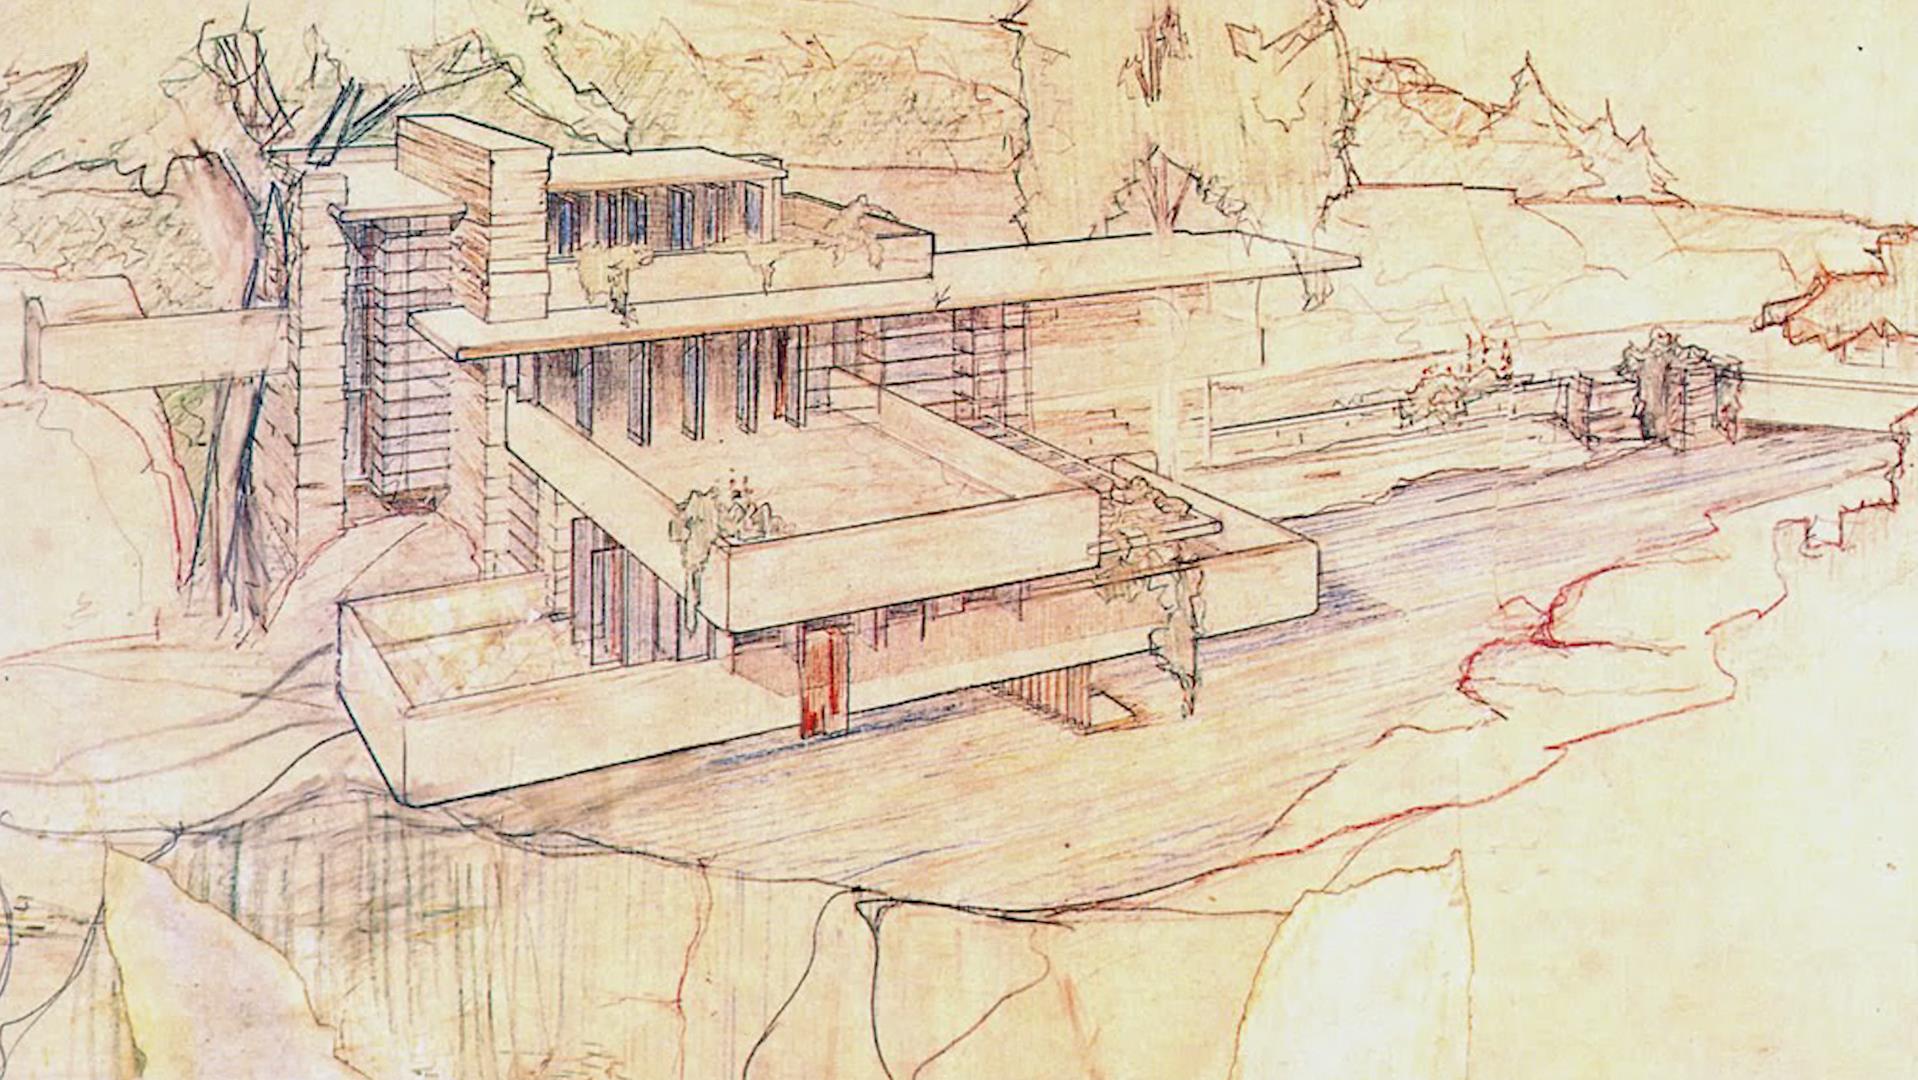 弗蘭克·勞埃德·賴特,Frank Lloyd Wright,有機建築,賴特建築視頻,賴特作品,流水別墅,田園學派,最偉大的美國建築師